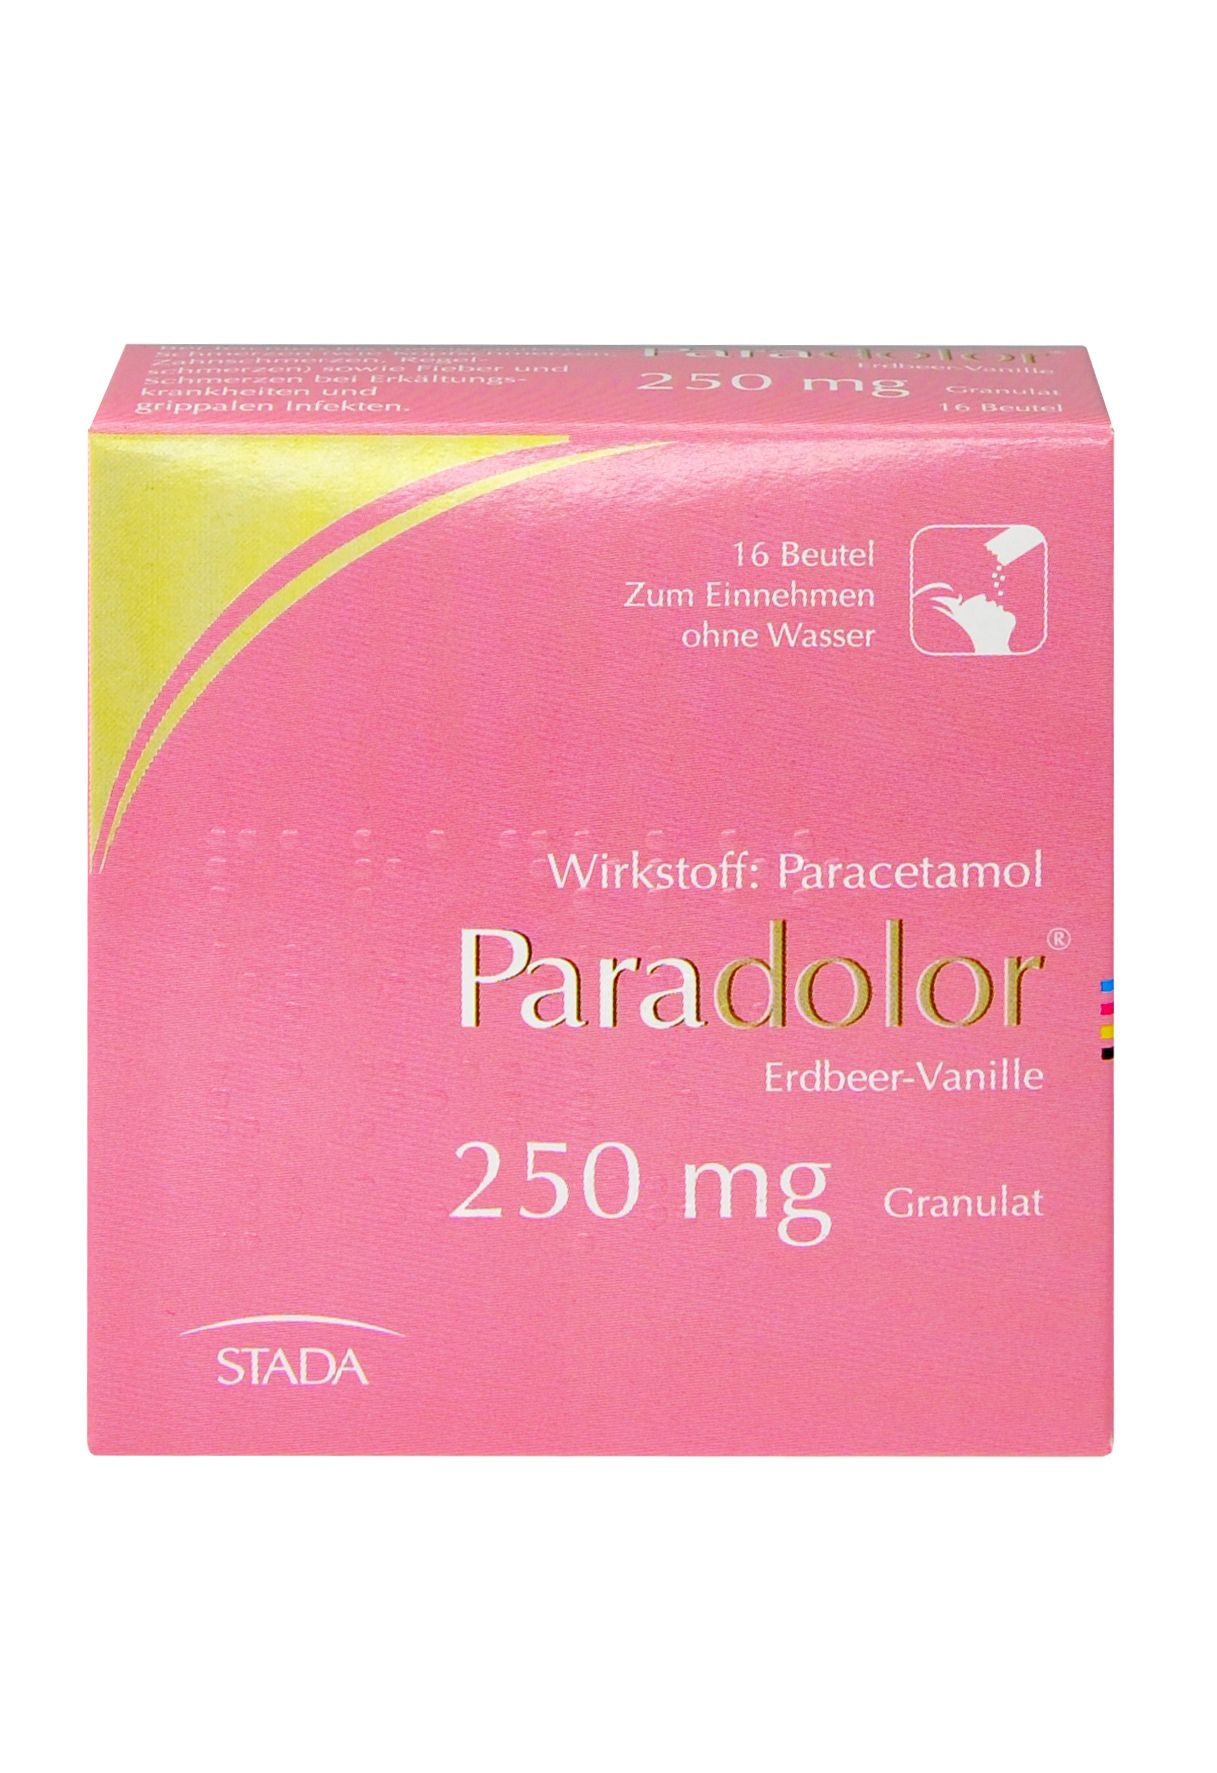 Abbildung Paradolor Erdbeer-Vanille 250 mg Granulat